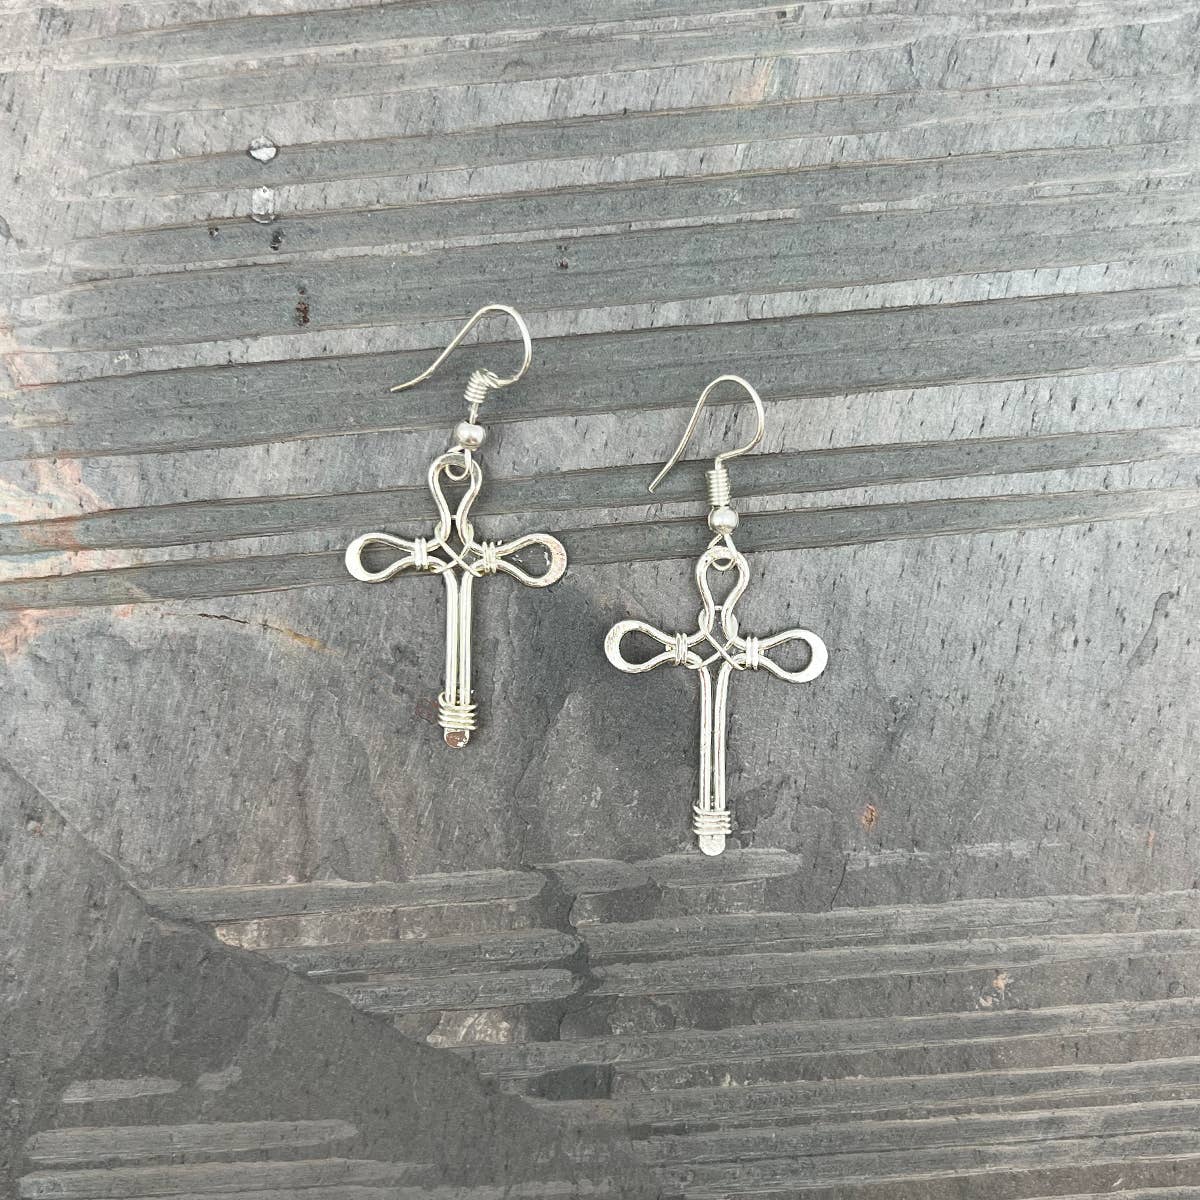 Silver Pointed Cross Earrings